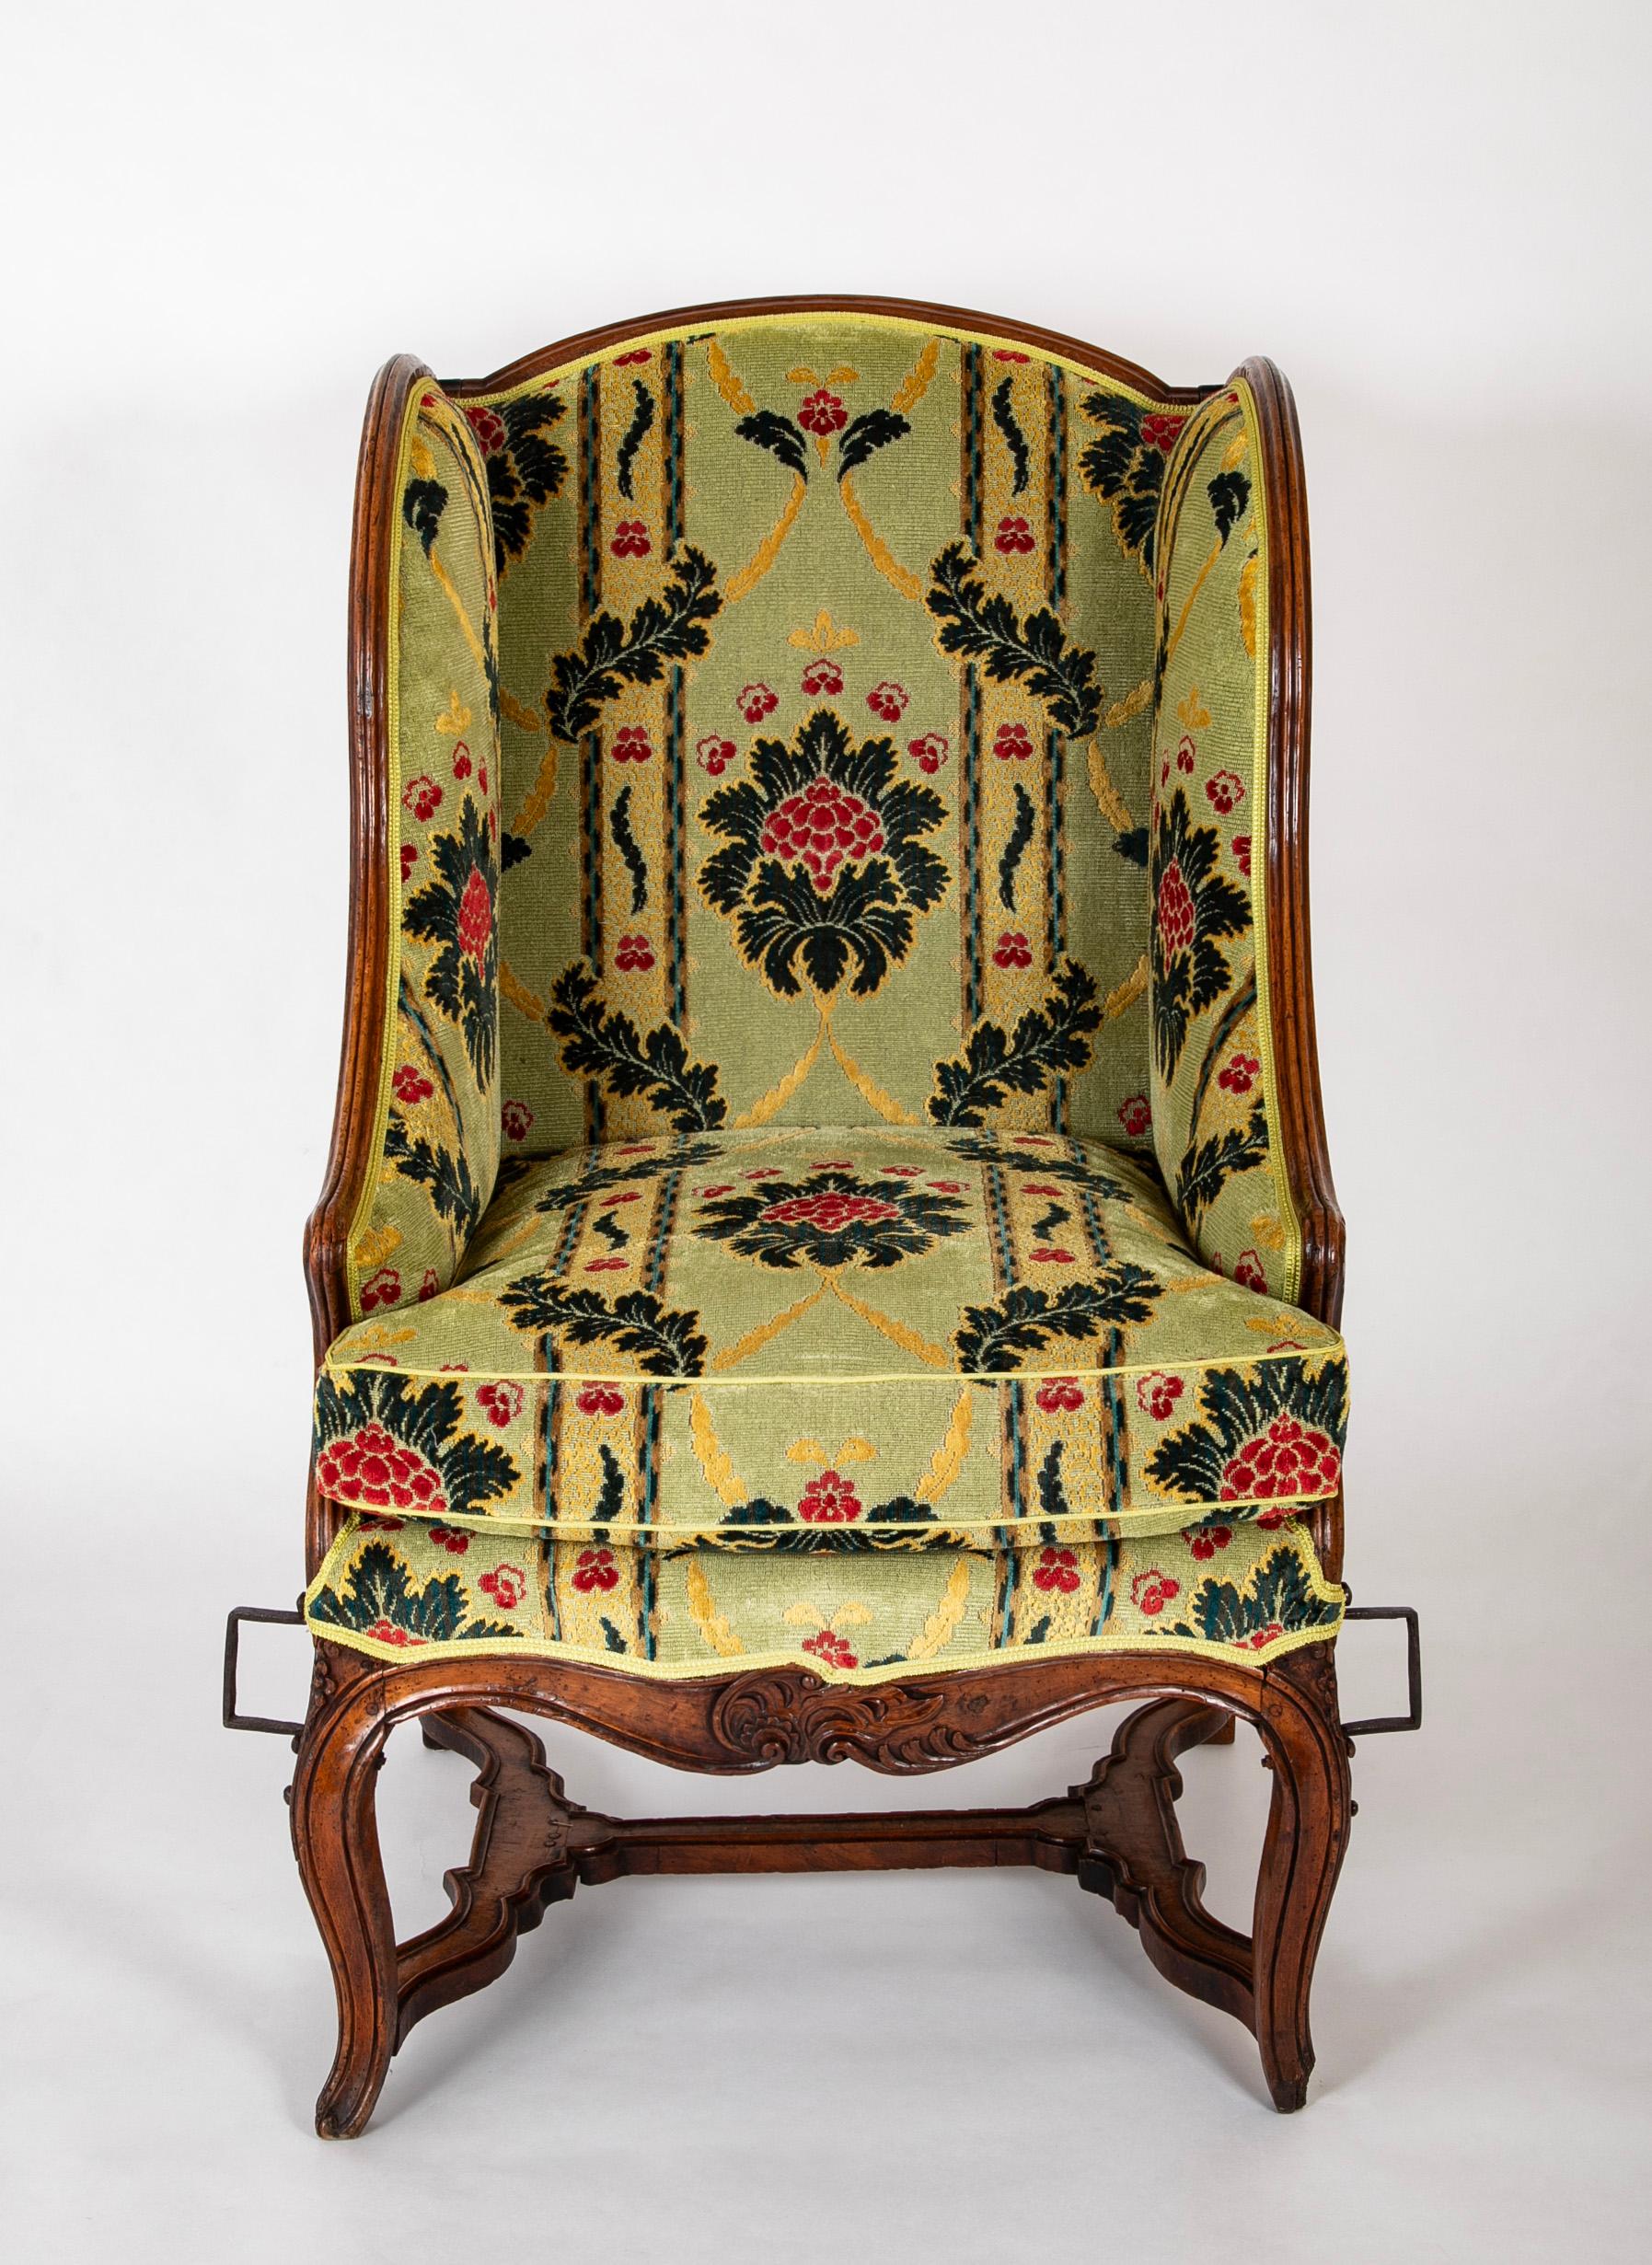 Un beau fauteuil français en noyer sculpté d'époque Louis XV, de grande taille, adapté plus tard avec des supports en fer forgé montés à la main pour une utilisation sur sédentaire.  XVIIIe siècle.